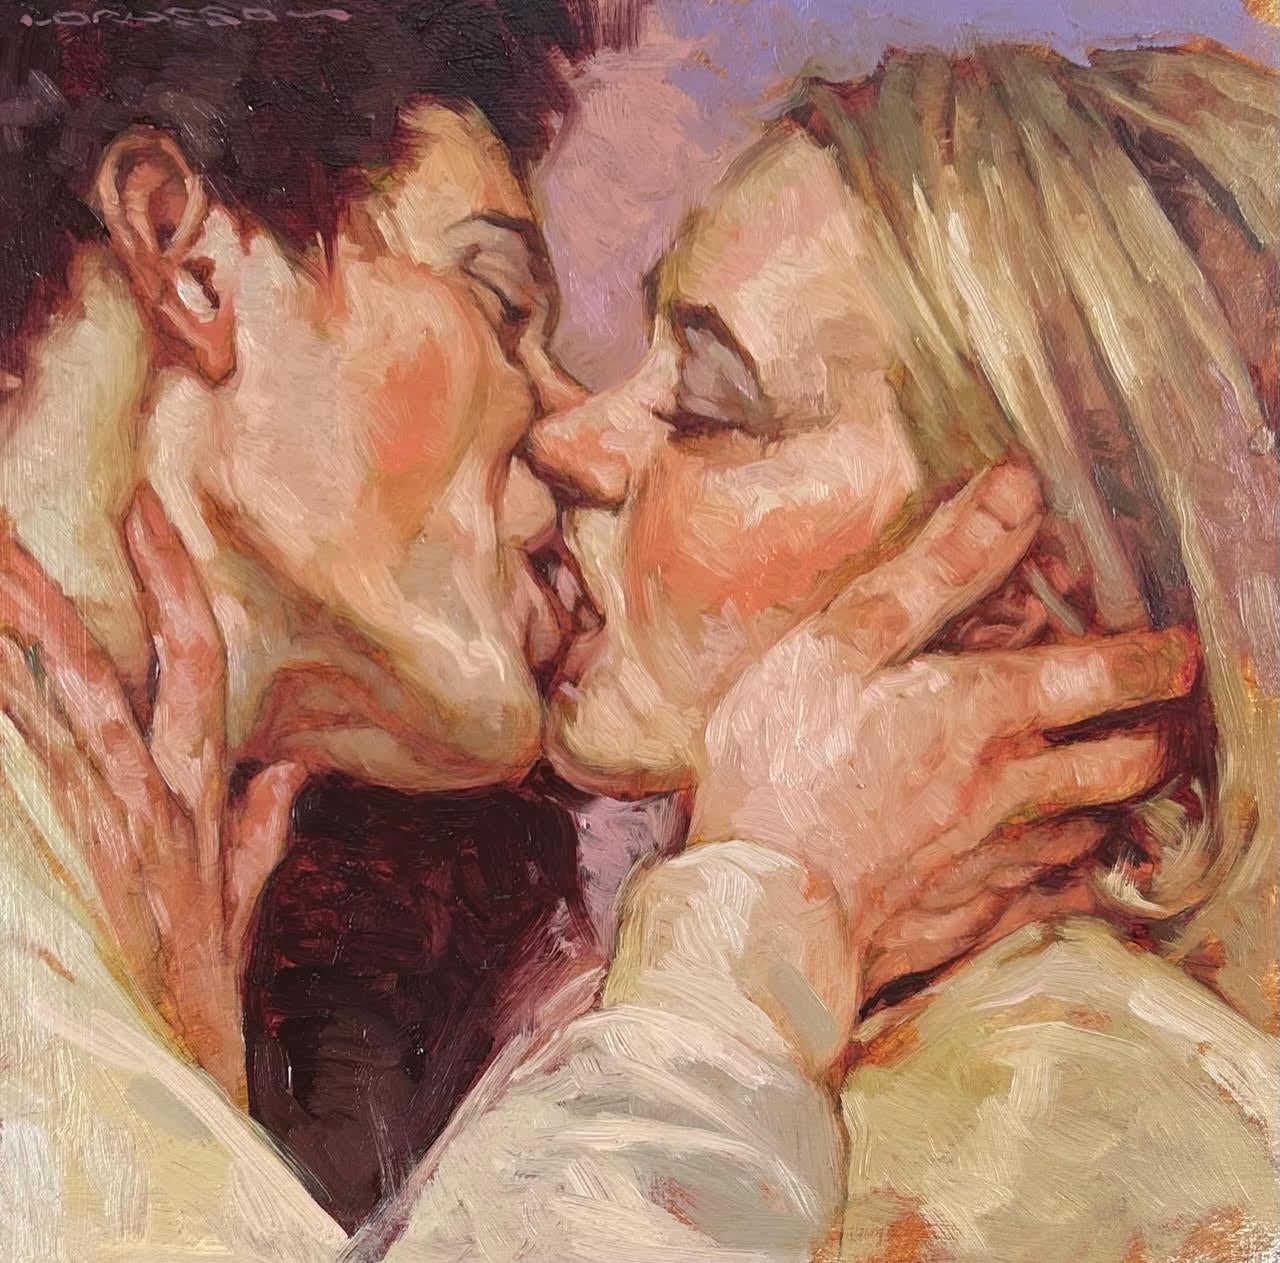 Portrait Painting Joseph Lorusso - "Kiss Me" Peinture à l'huile en gros plan d'un homme et d'une femme s'embrassant en se tenant par la main.